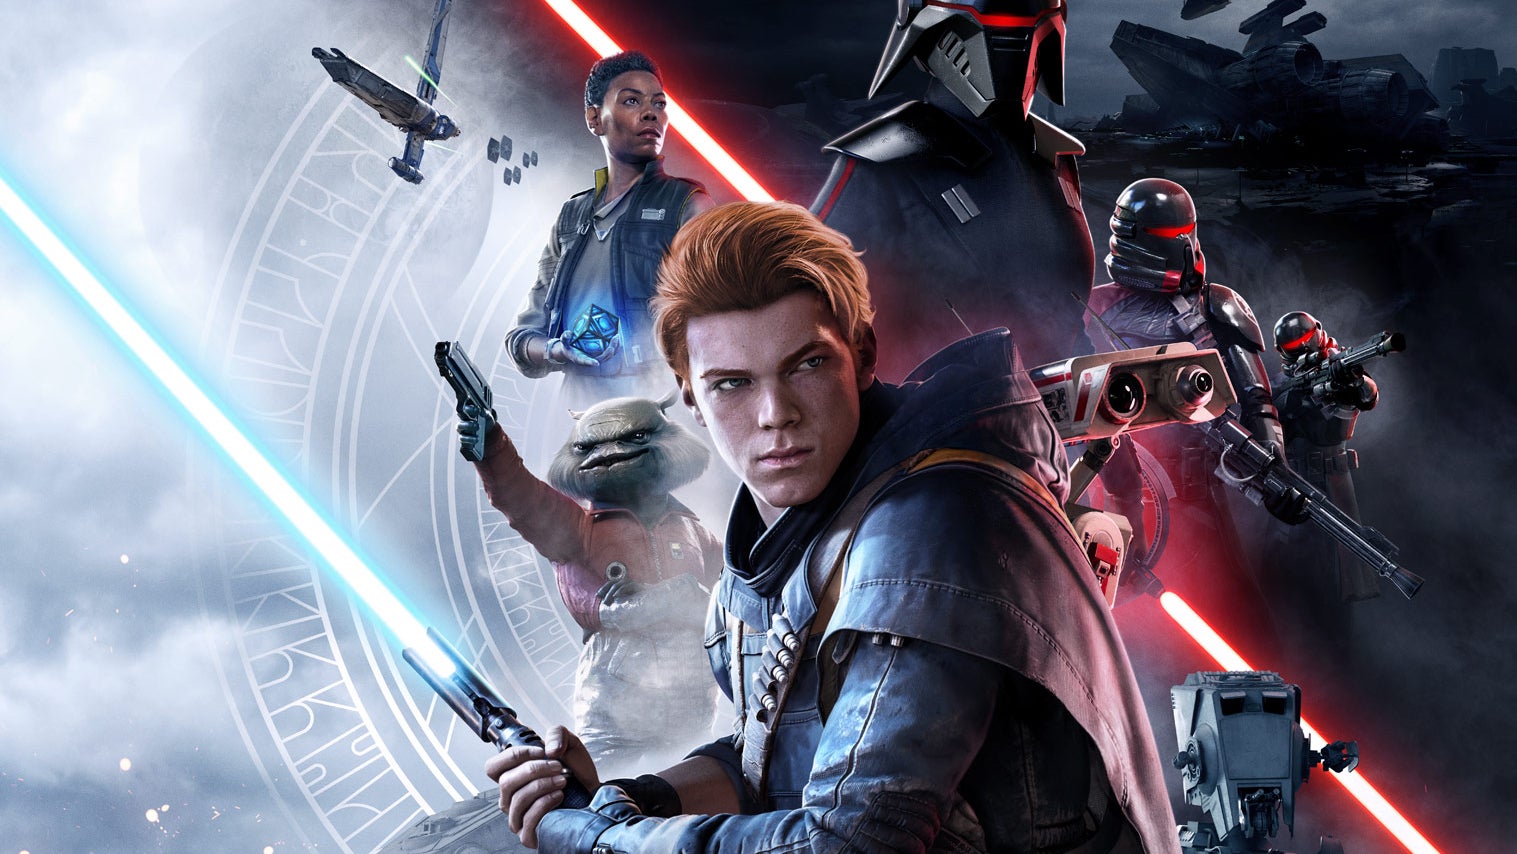 Immagine di Star Wars Jedi: Fallen Order tra i giochi gratis di gennaio per gli abbonati a Amazon Prime